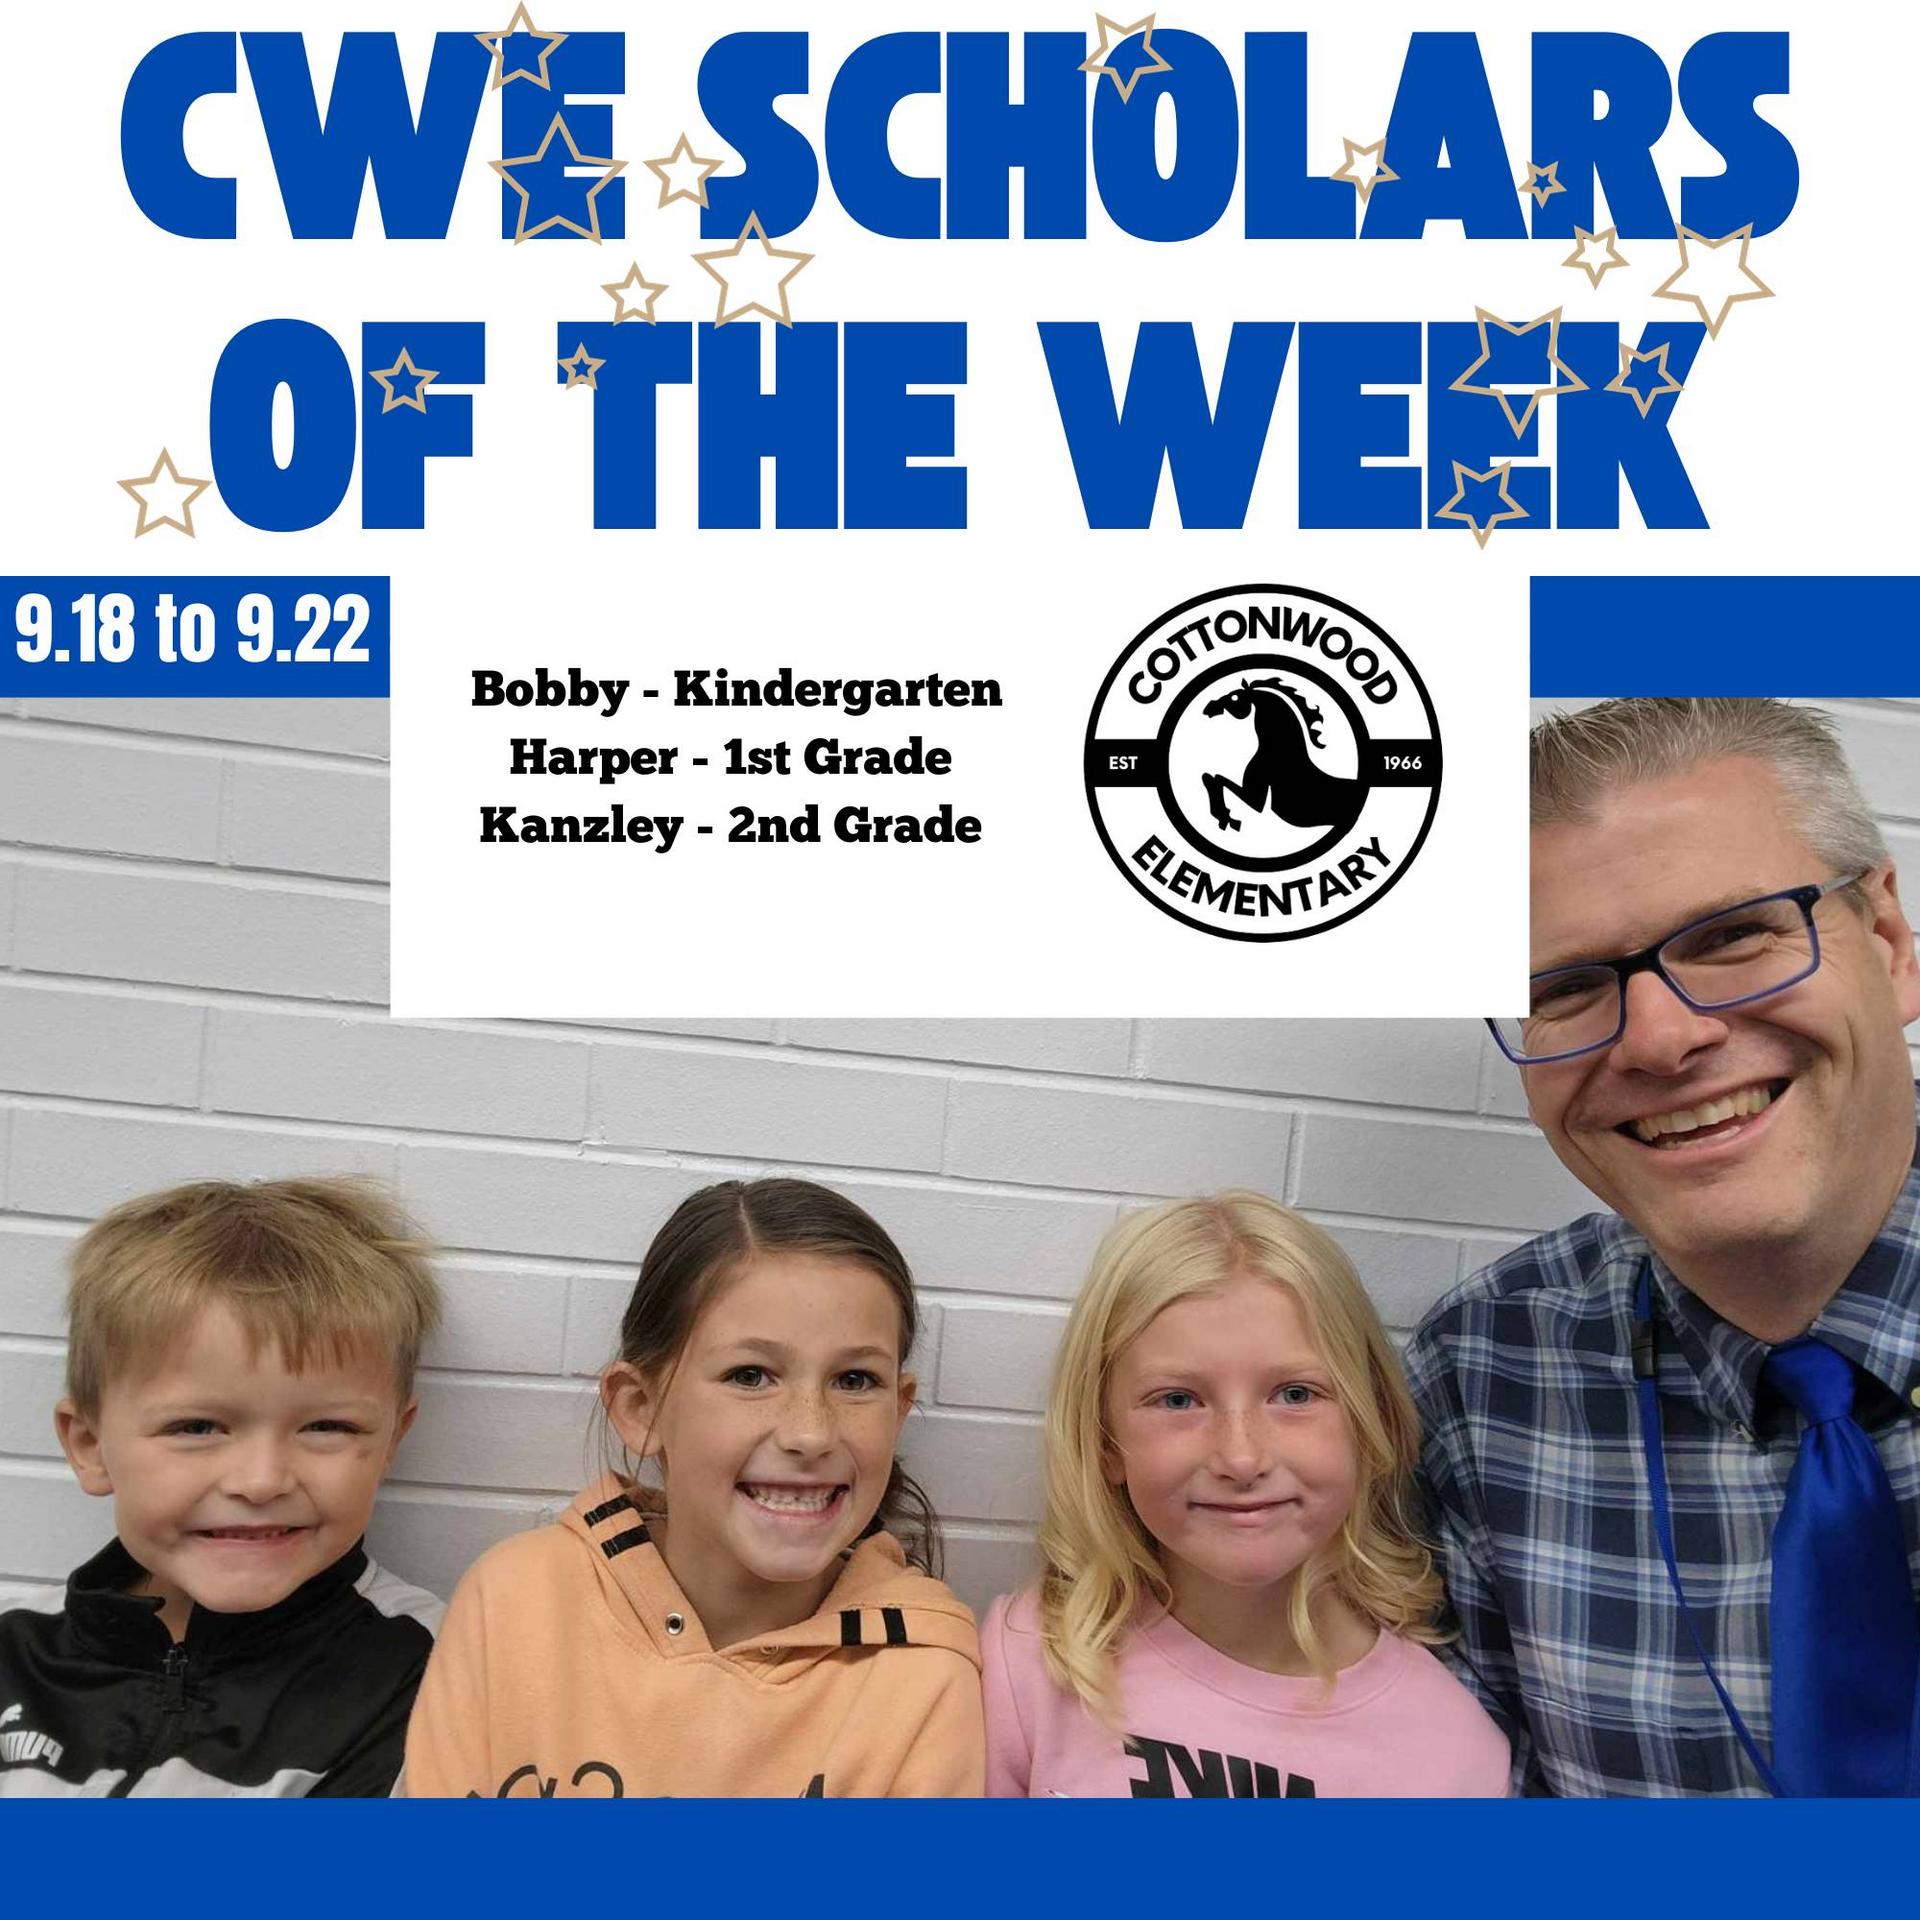 CWE-Scholars-of-the-Week-9.18-to-9.22.jpg